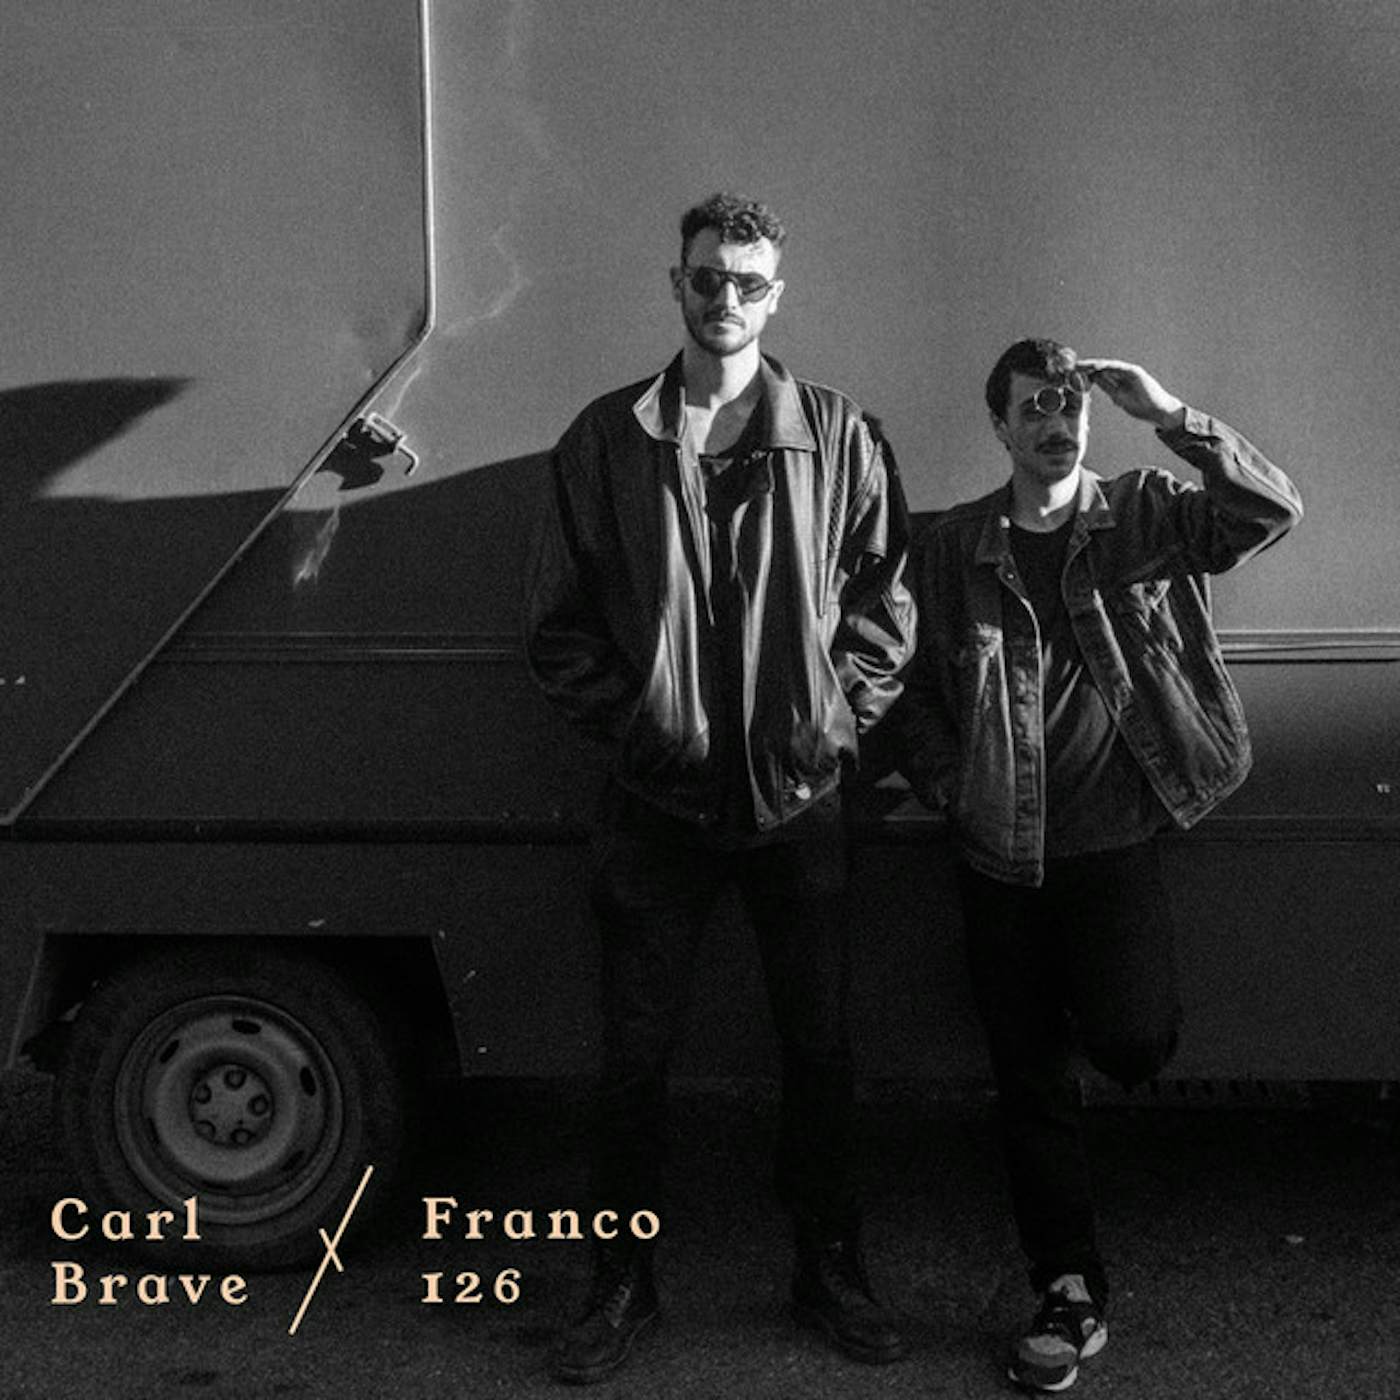 Carl Brave x Franco126 Polaroid 2.0 Vinyl Record